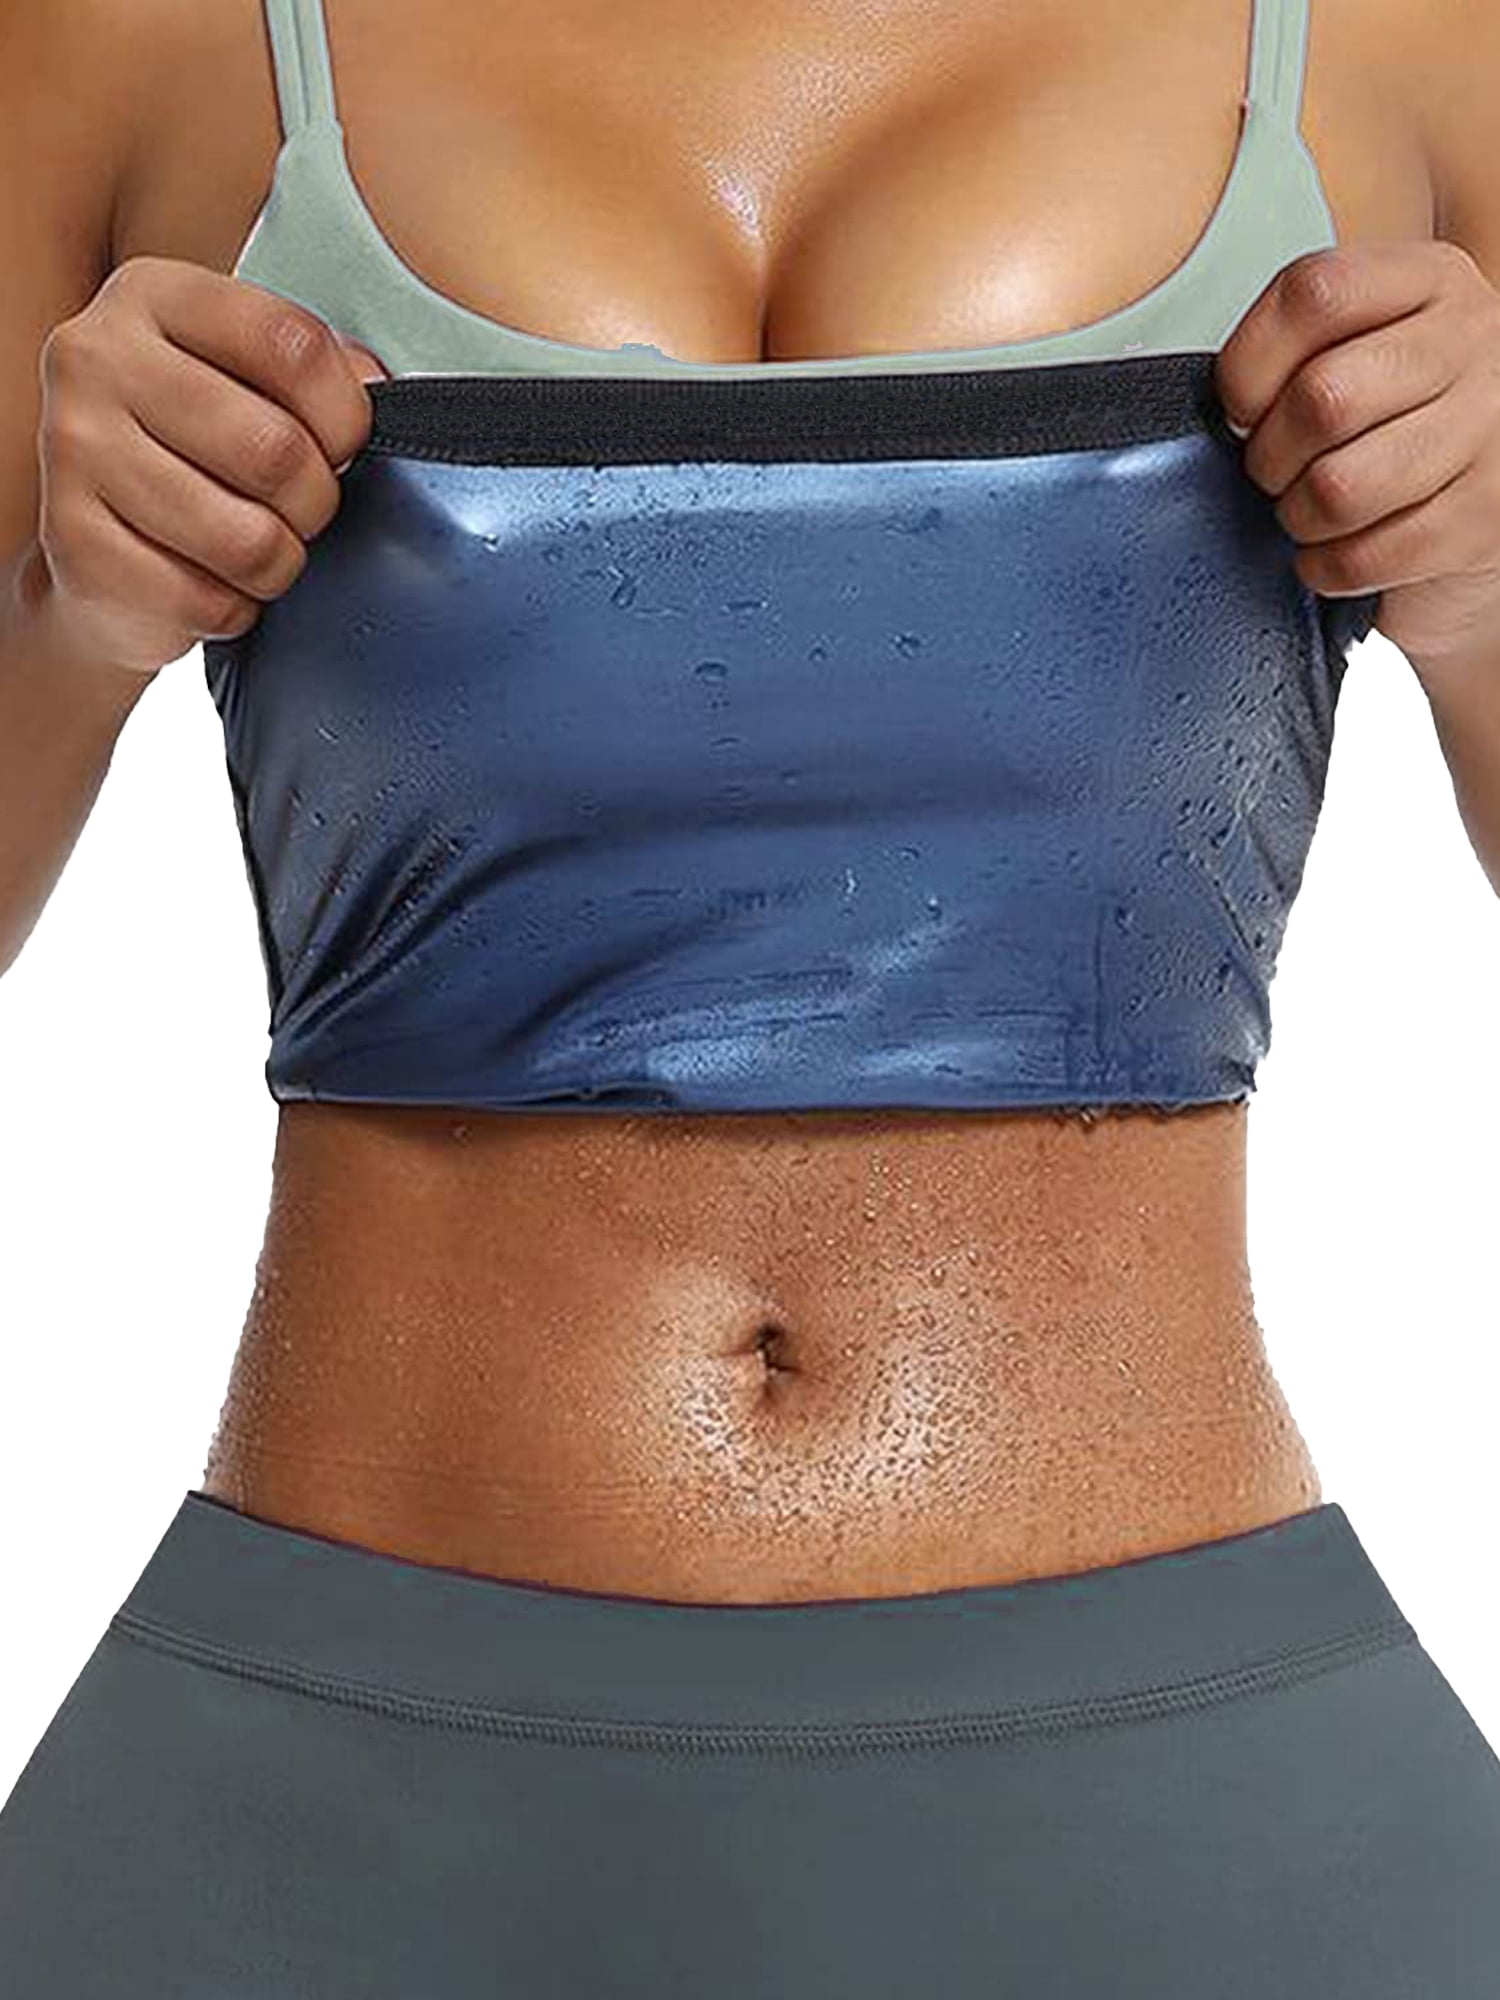 Women Belly Sweat Band Waist Trimmer Belt Fat Burning Stomach